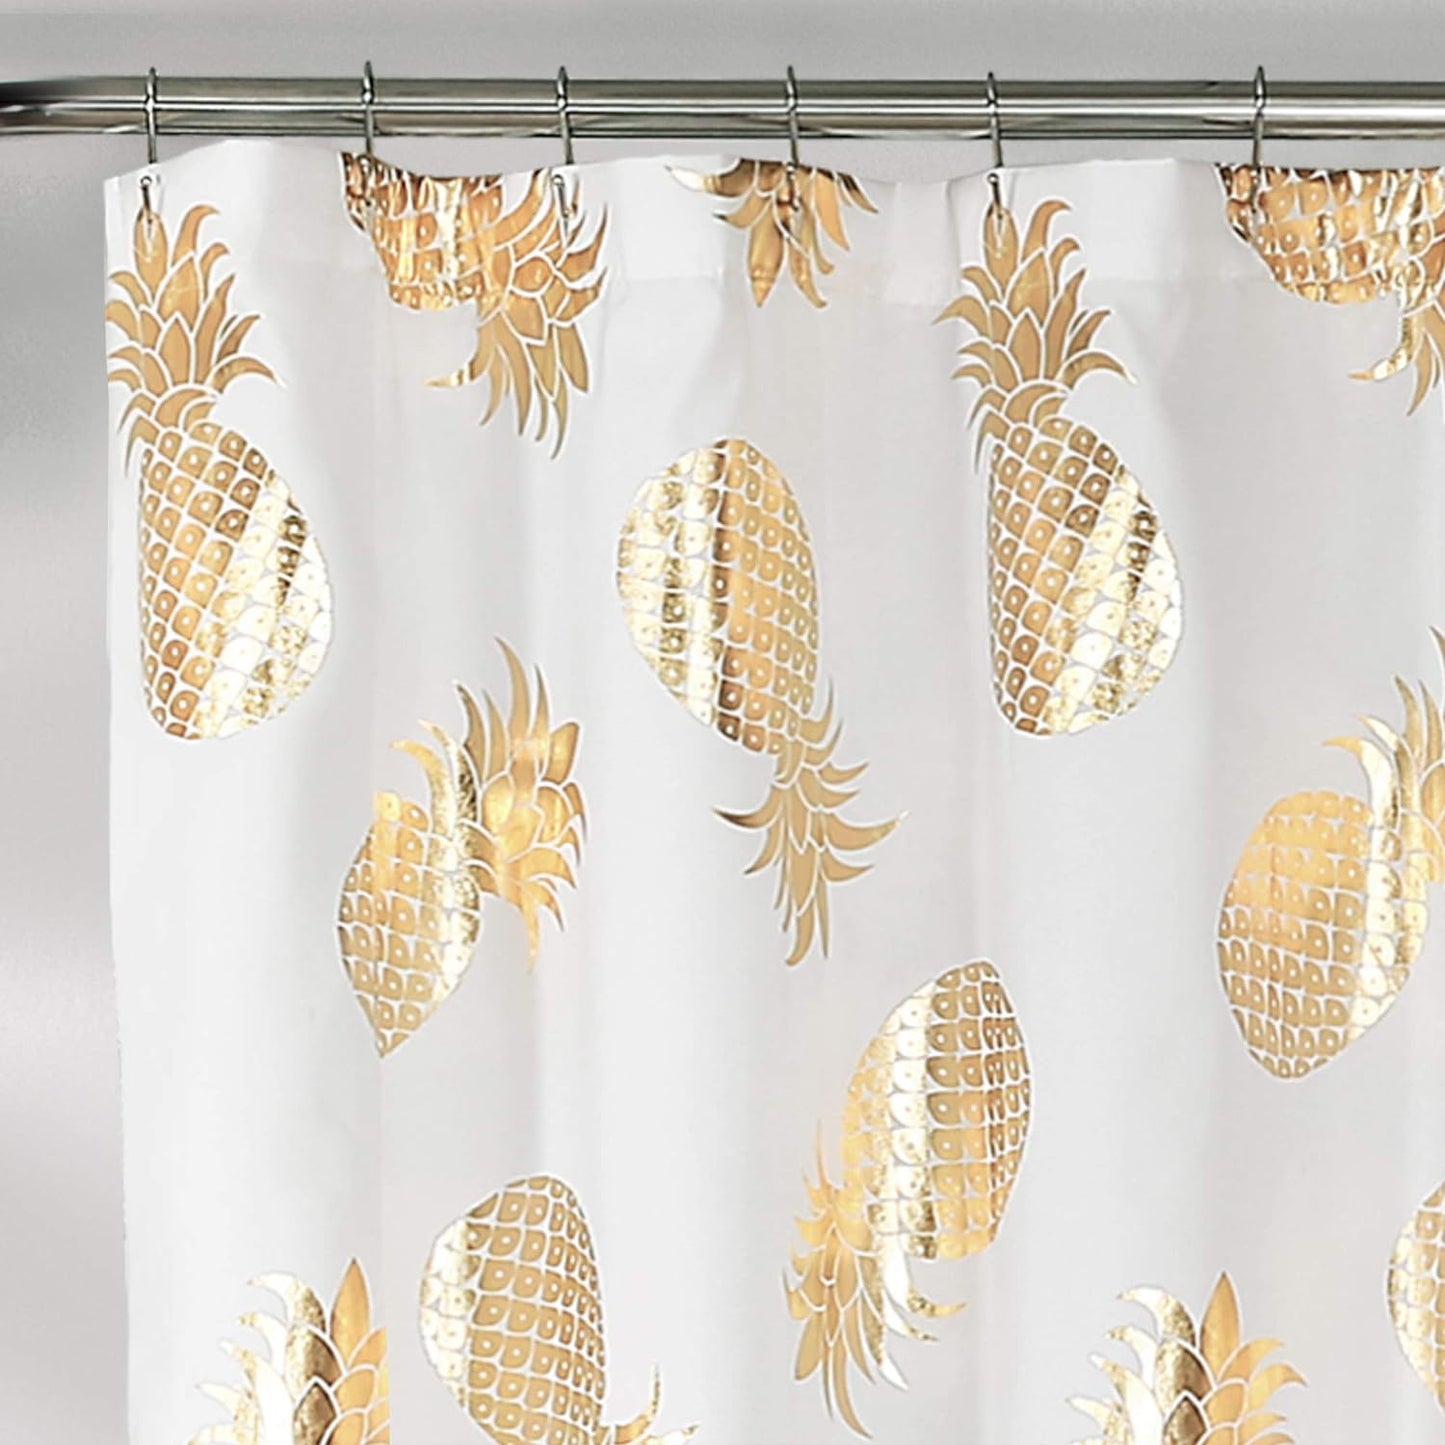 Pineapple Toss Shower Curtain, 72" X 72", Gold